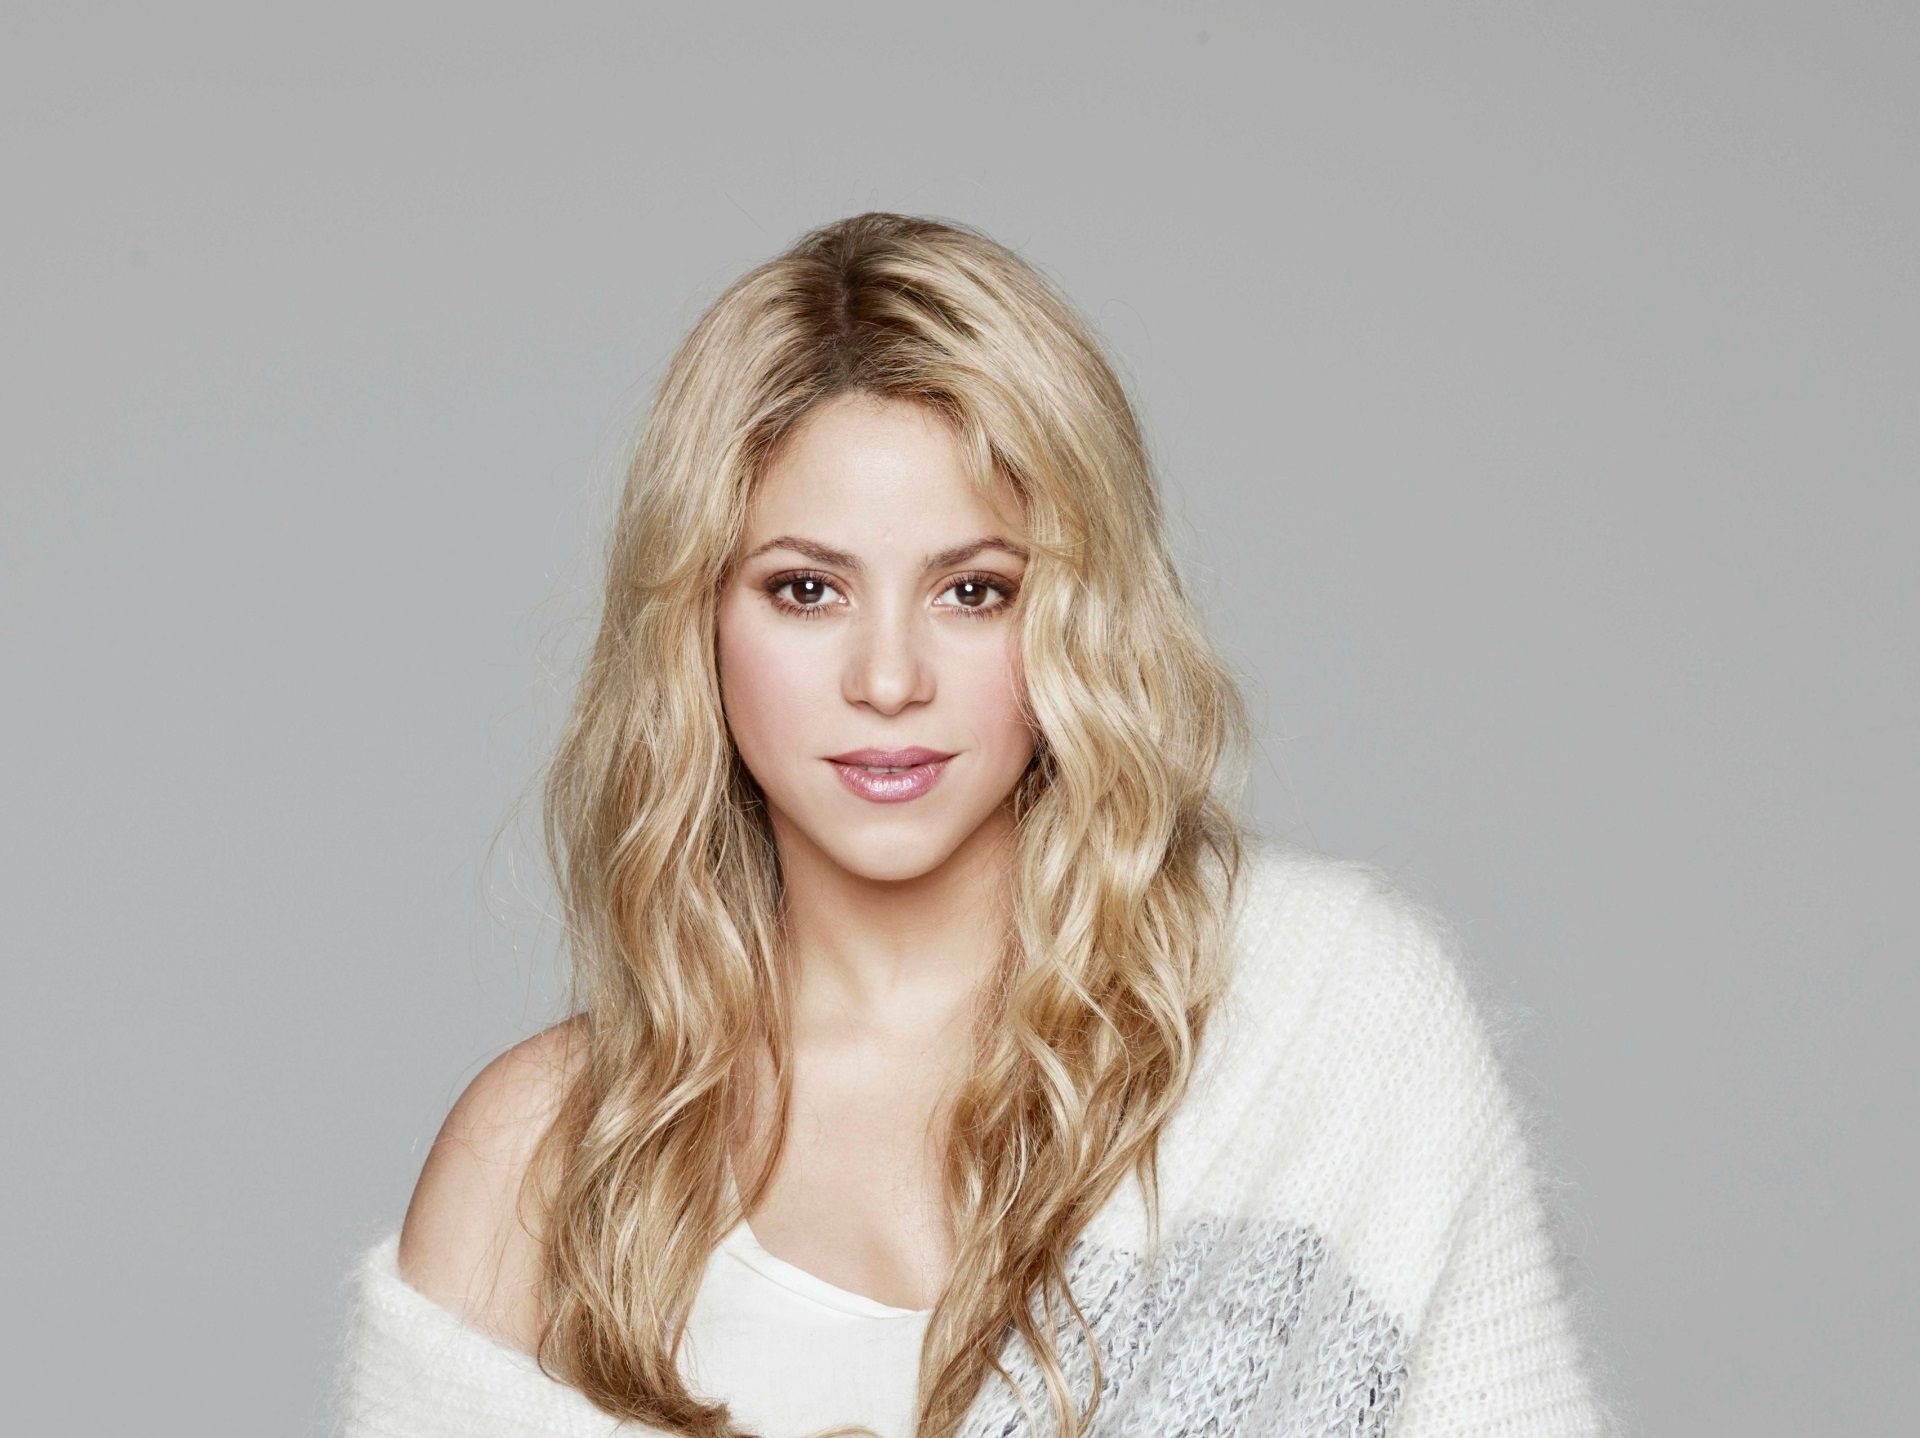 Shakira, Free PC wallpaper, High definition photos, Celeb icon, 1920x1440 HD Desktop